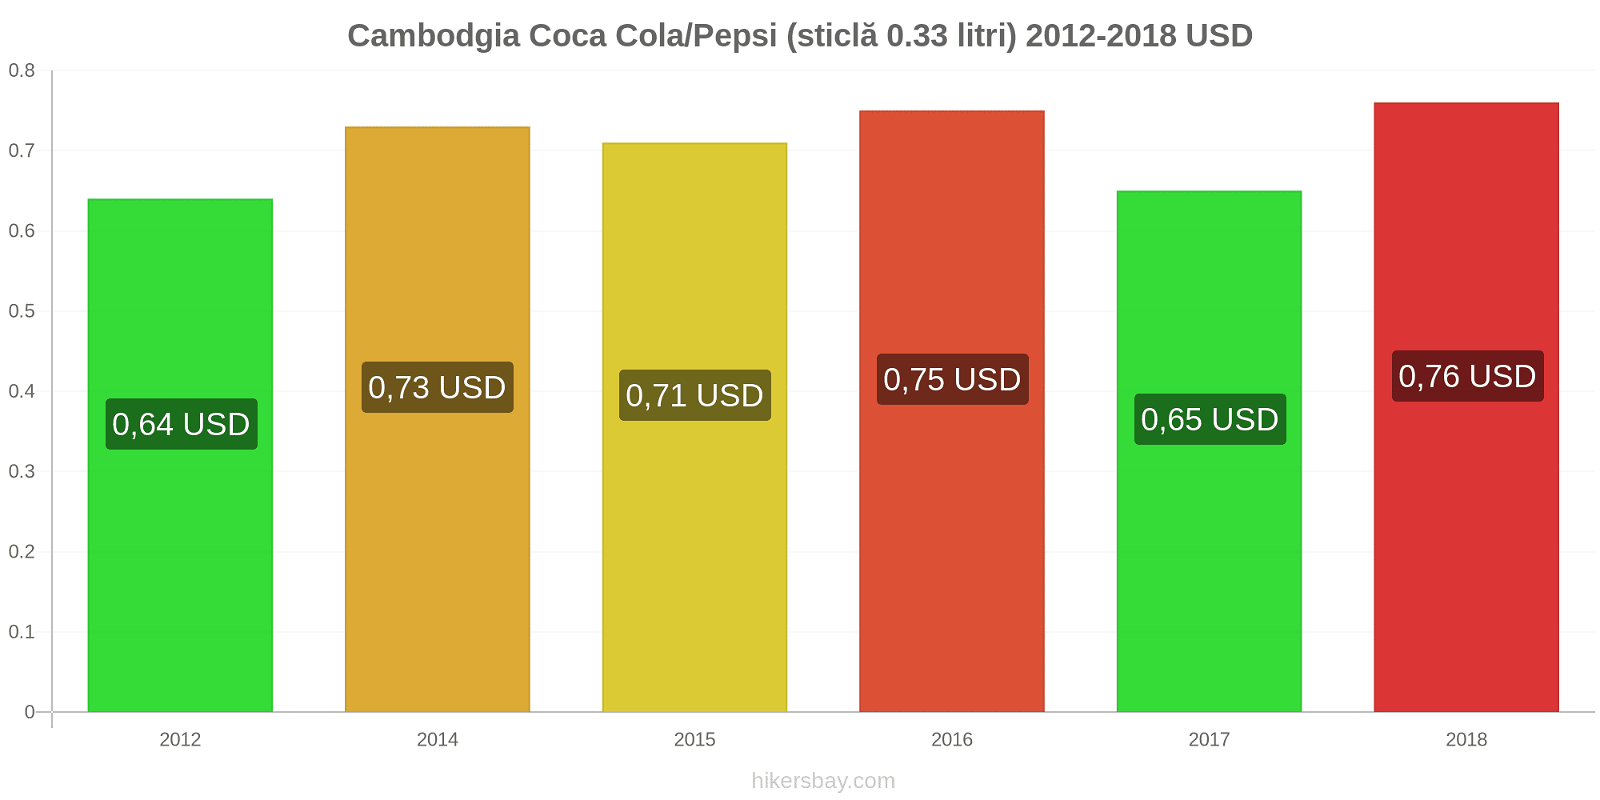 Cambodgia schimbări de prețuri Coca-Cola/Pepsi (sticlă de 0.33 litri) hikersbay.com